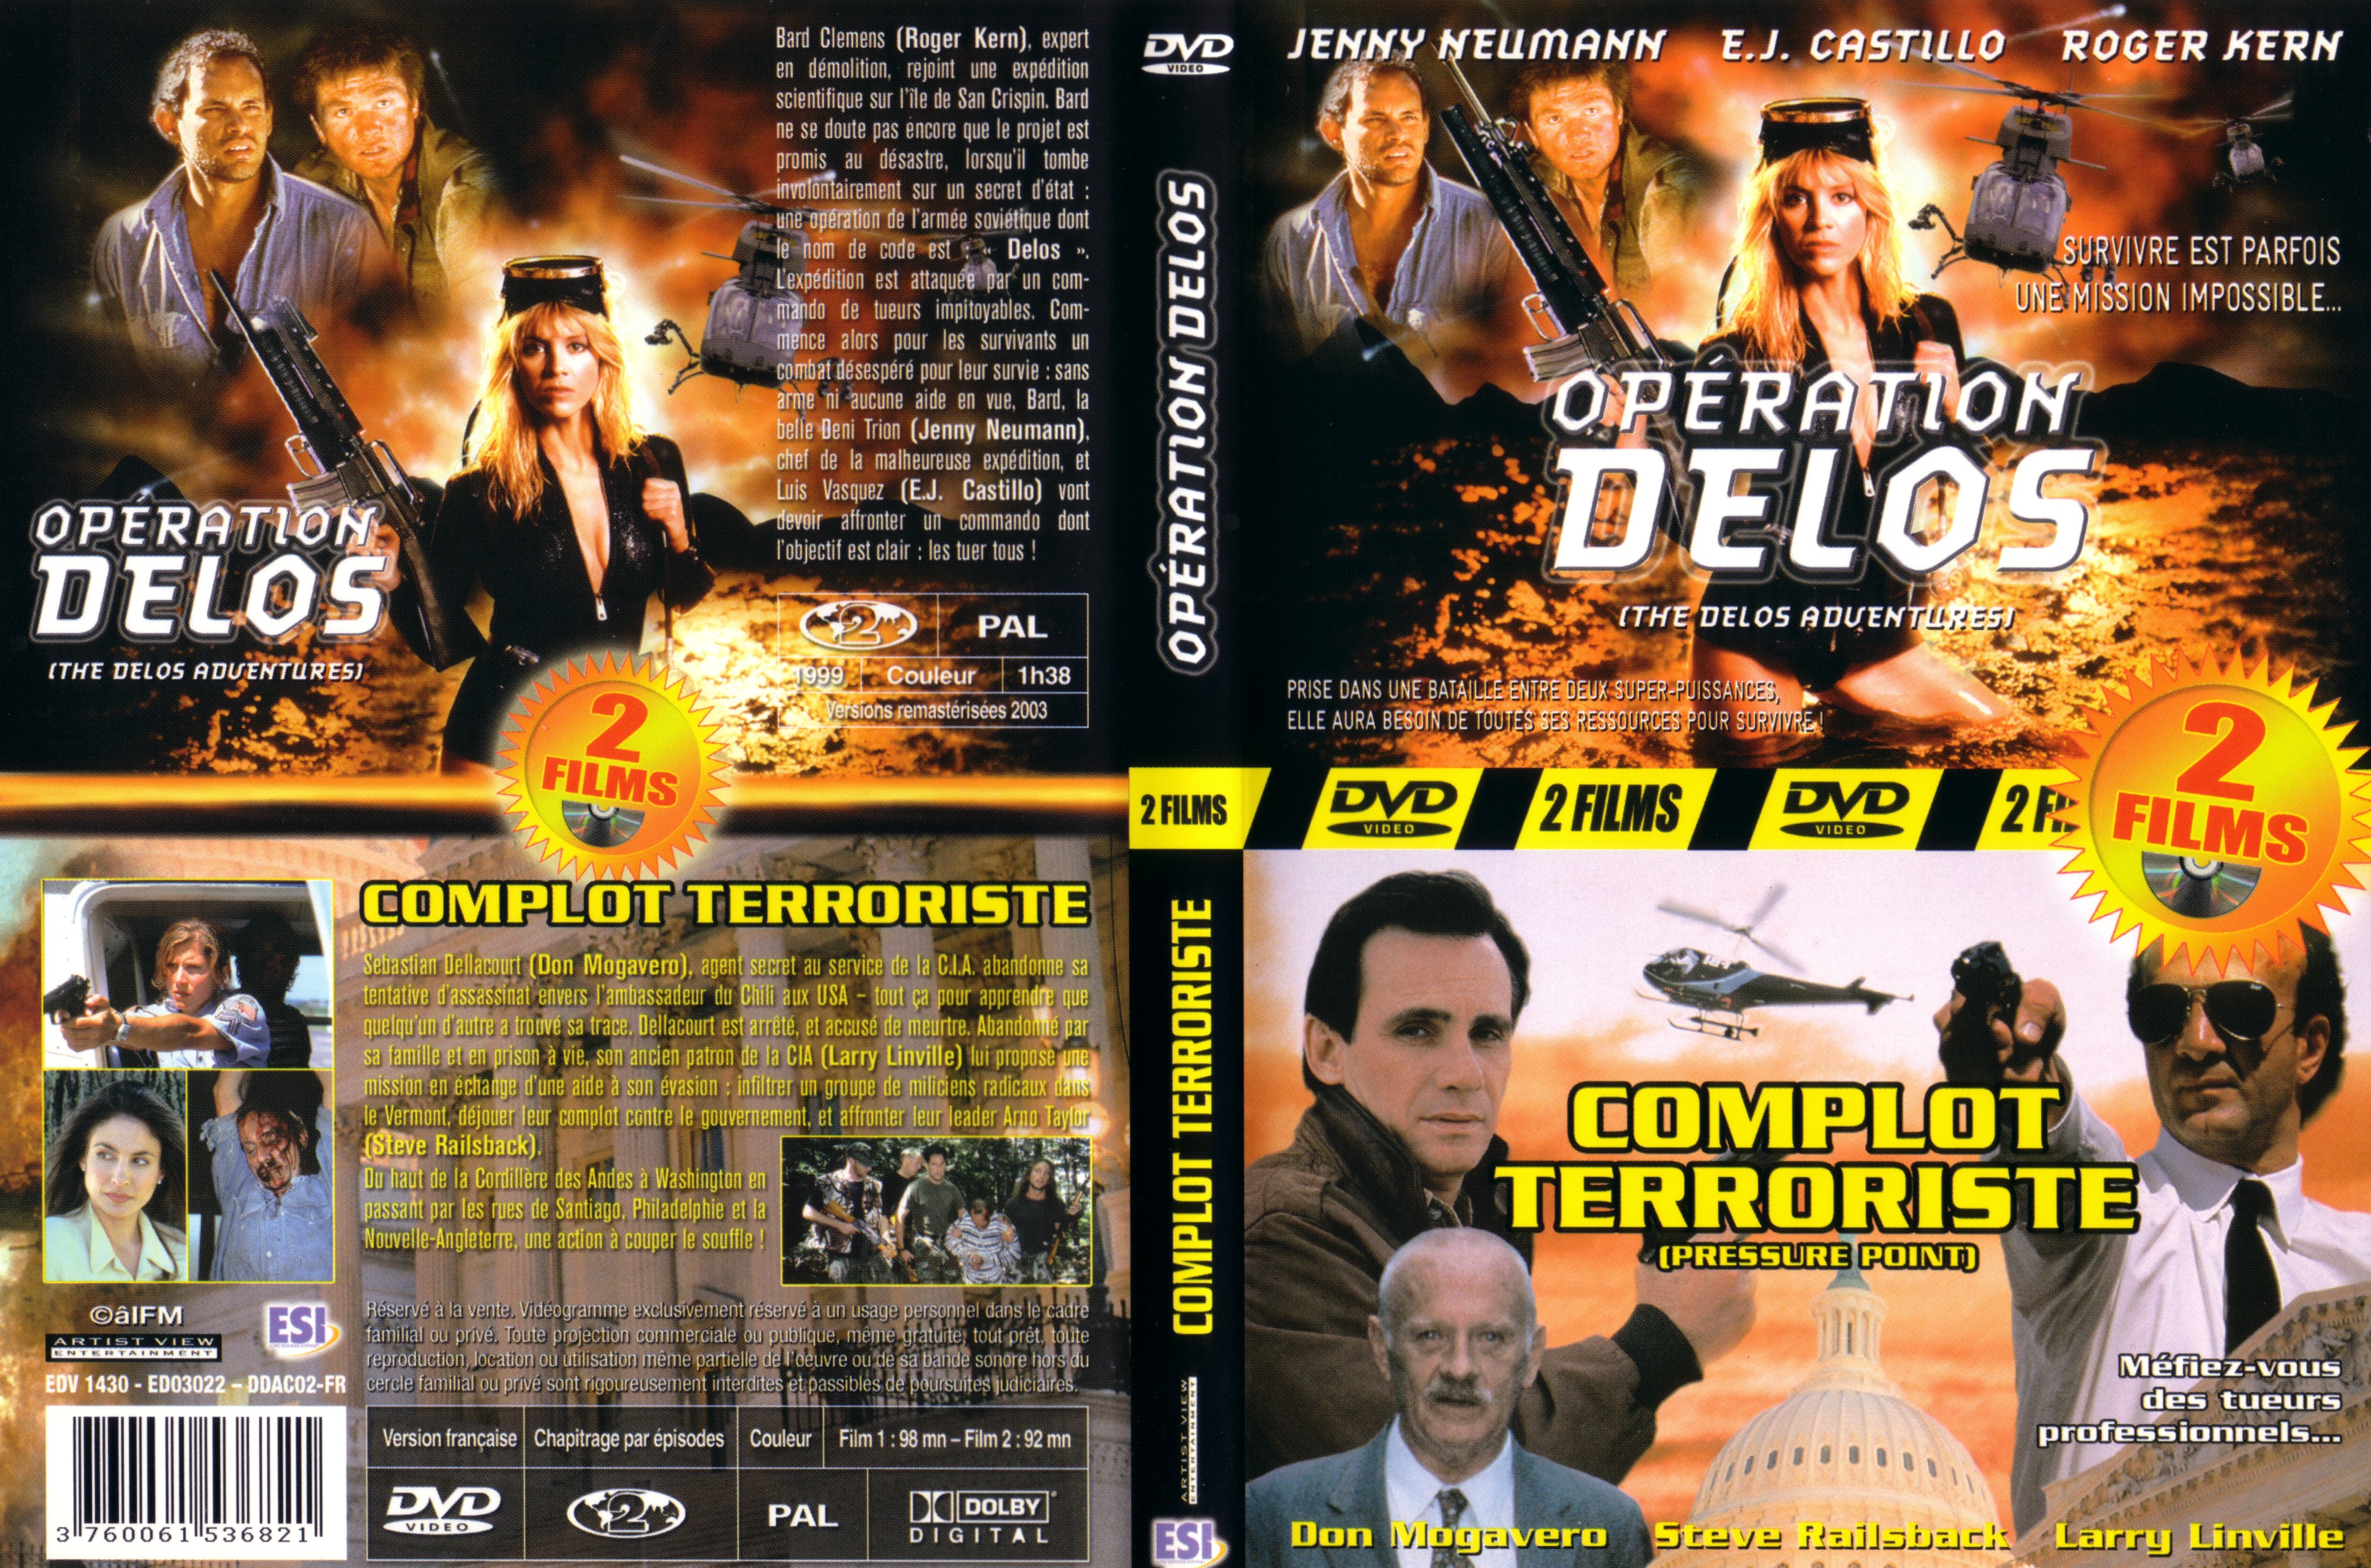 Jaquette DVD Operation delos + complot terroriste